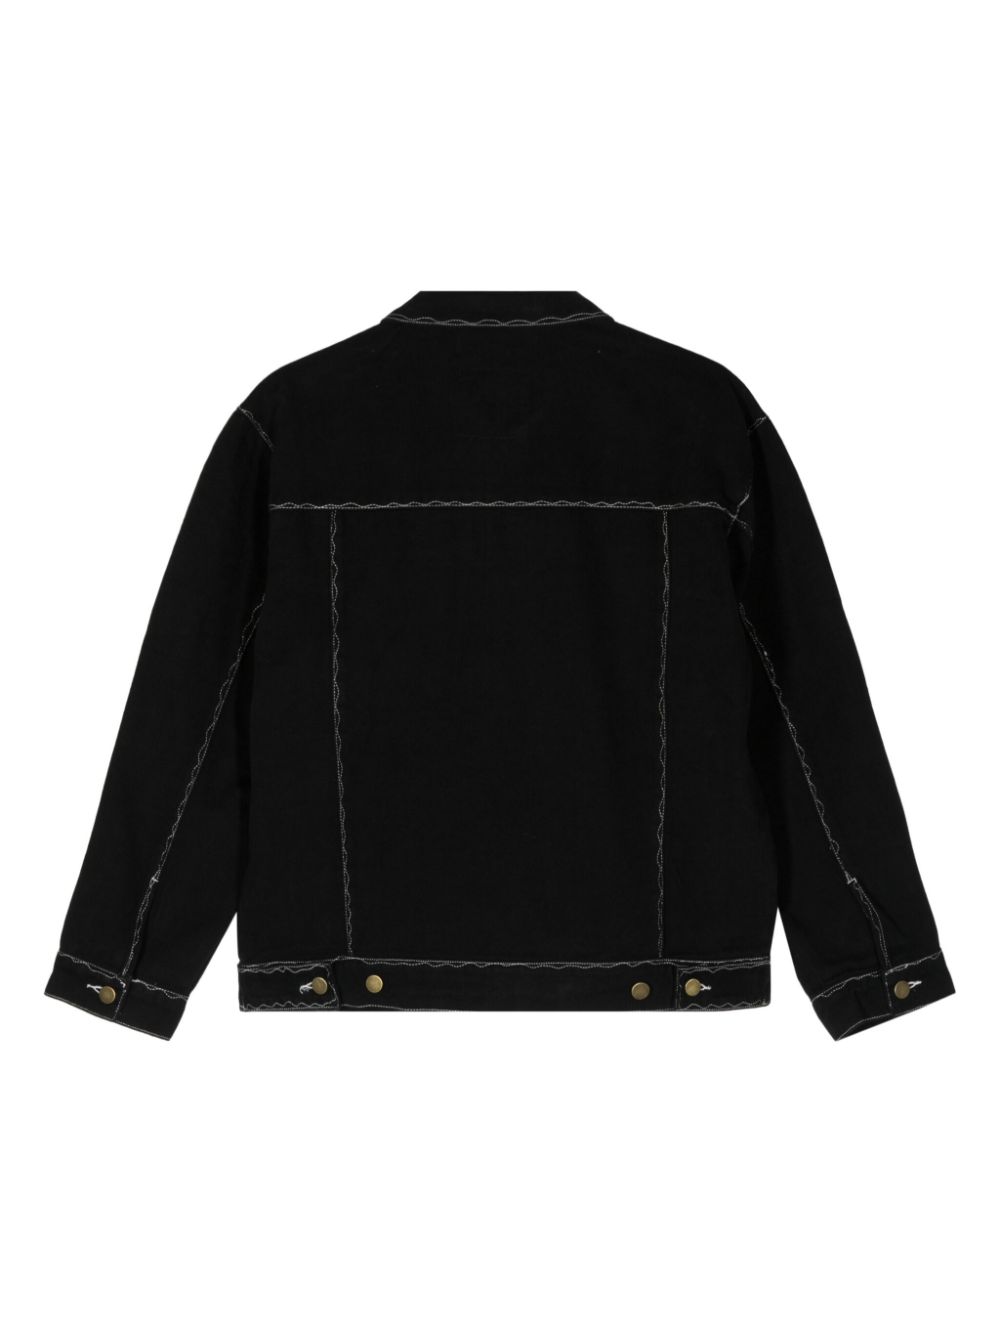 KidSuper decorative-stitching Cotton Shirt Jacket - Farfetch